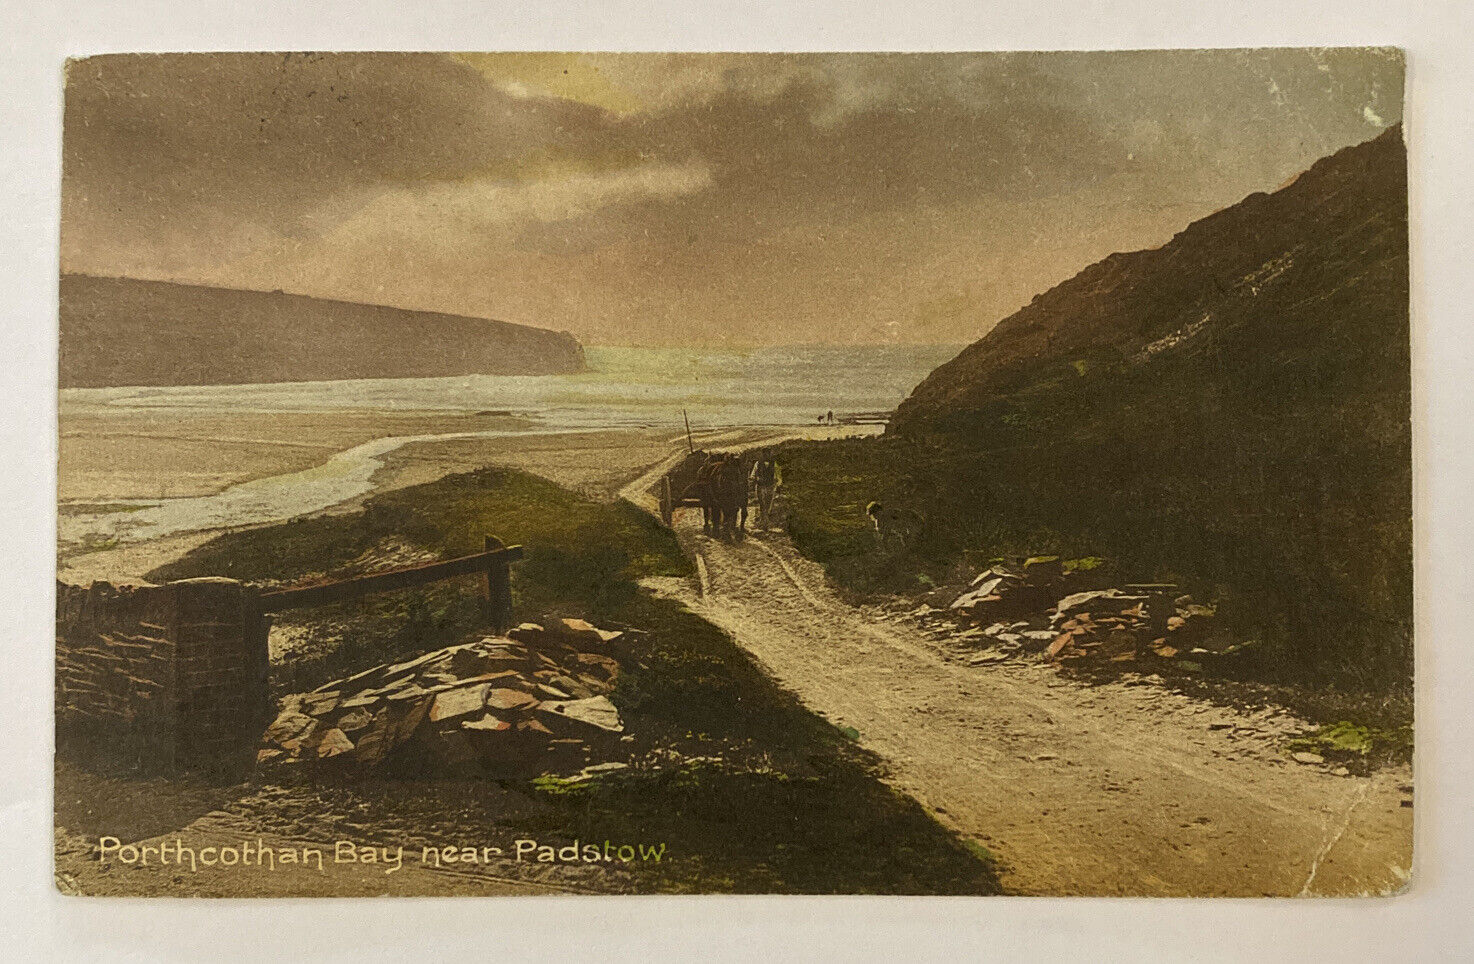 Vintage Postcard Porthcothan Bay near Padstow, England